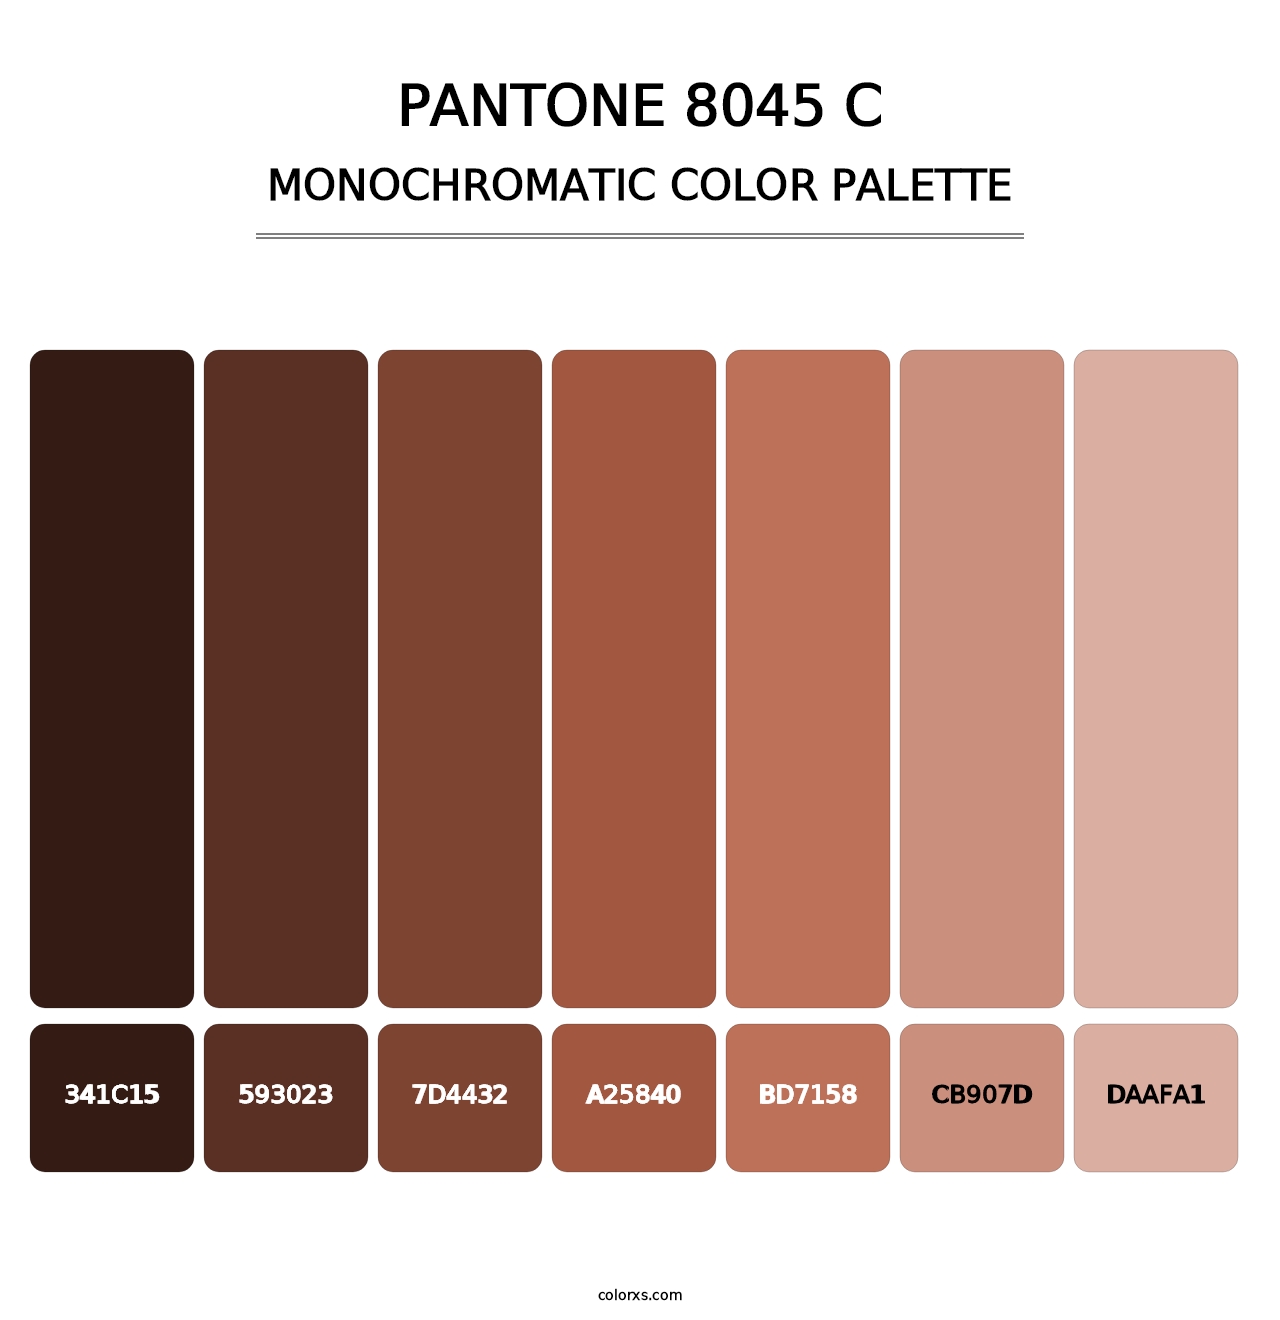 PANTONE 8045 C - Monochromatic Color Palette